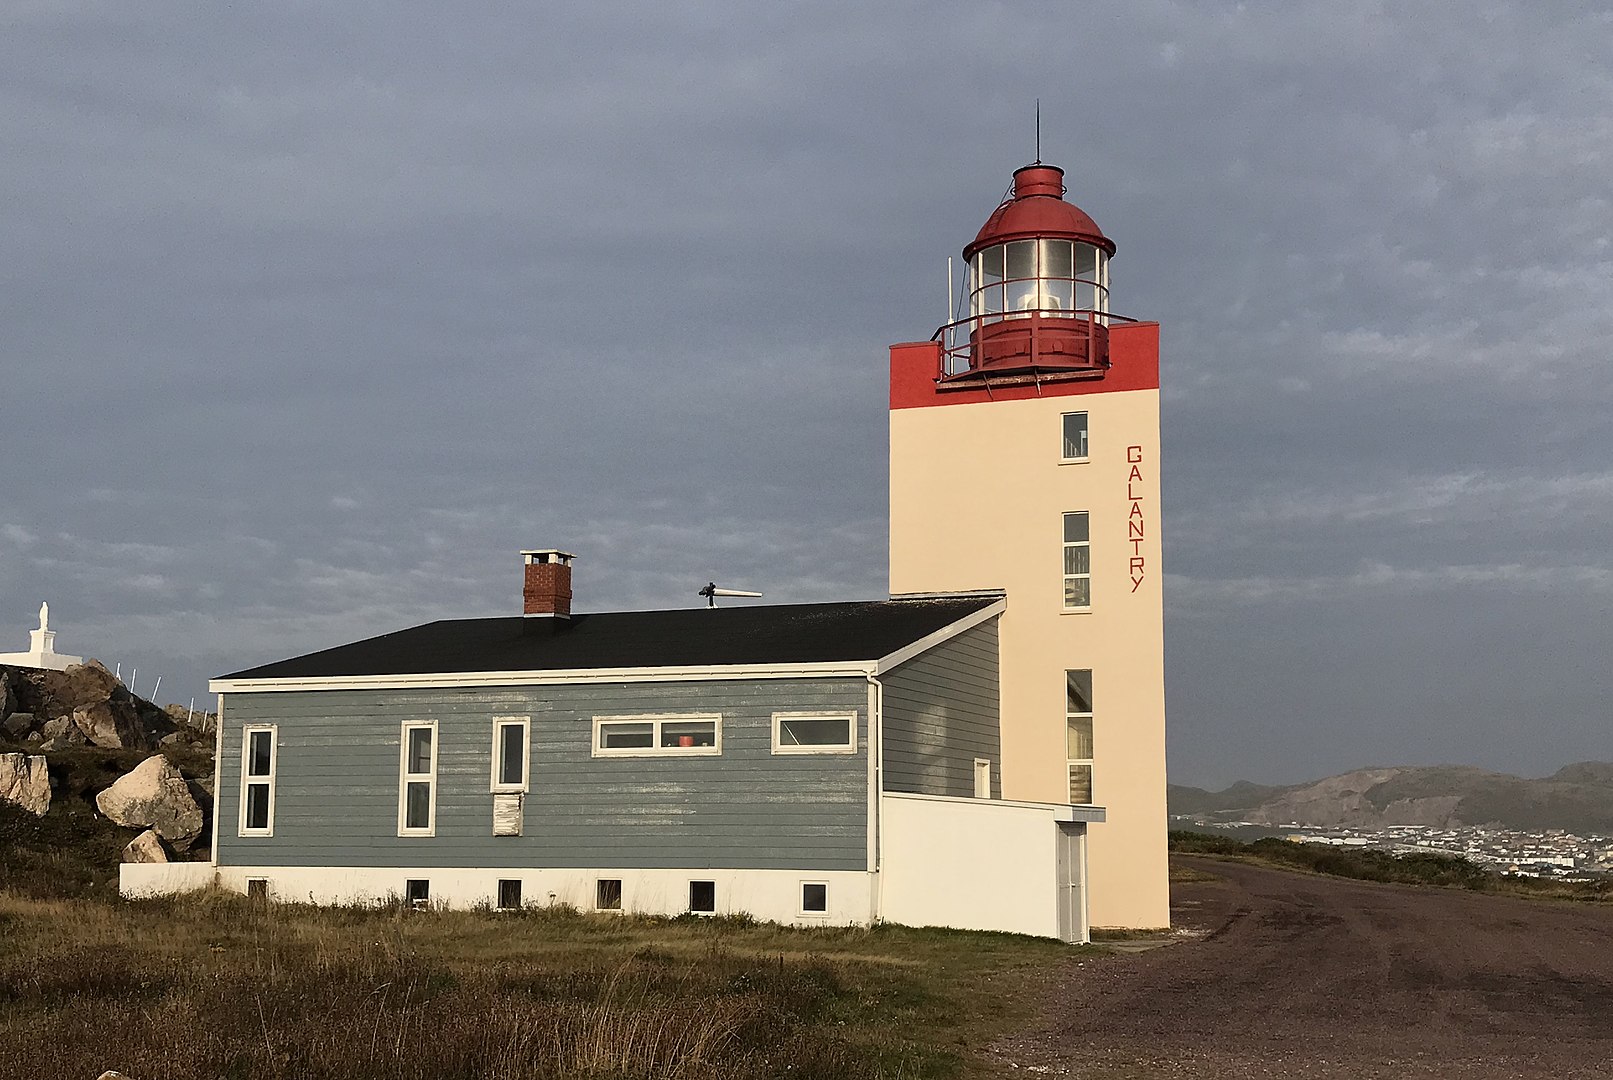 Ariane 6 : Le phare de Galantry à Saint-Pierre-et-Miquelon, prochaine station de suivi de la fusée européenne?